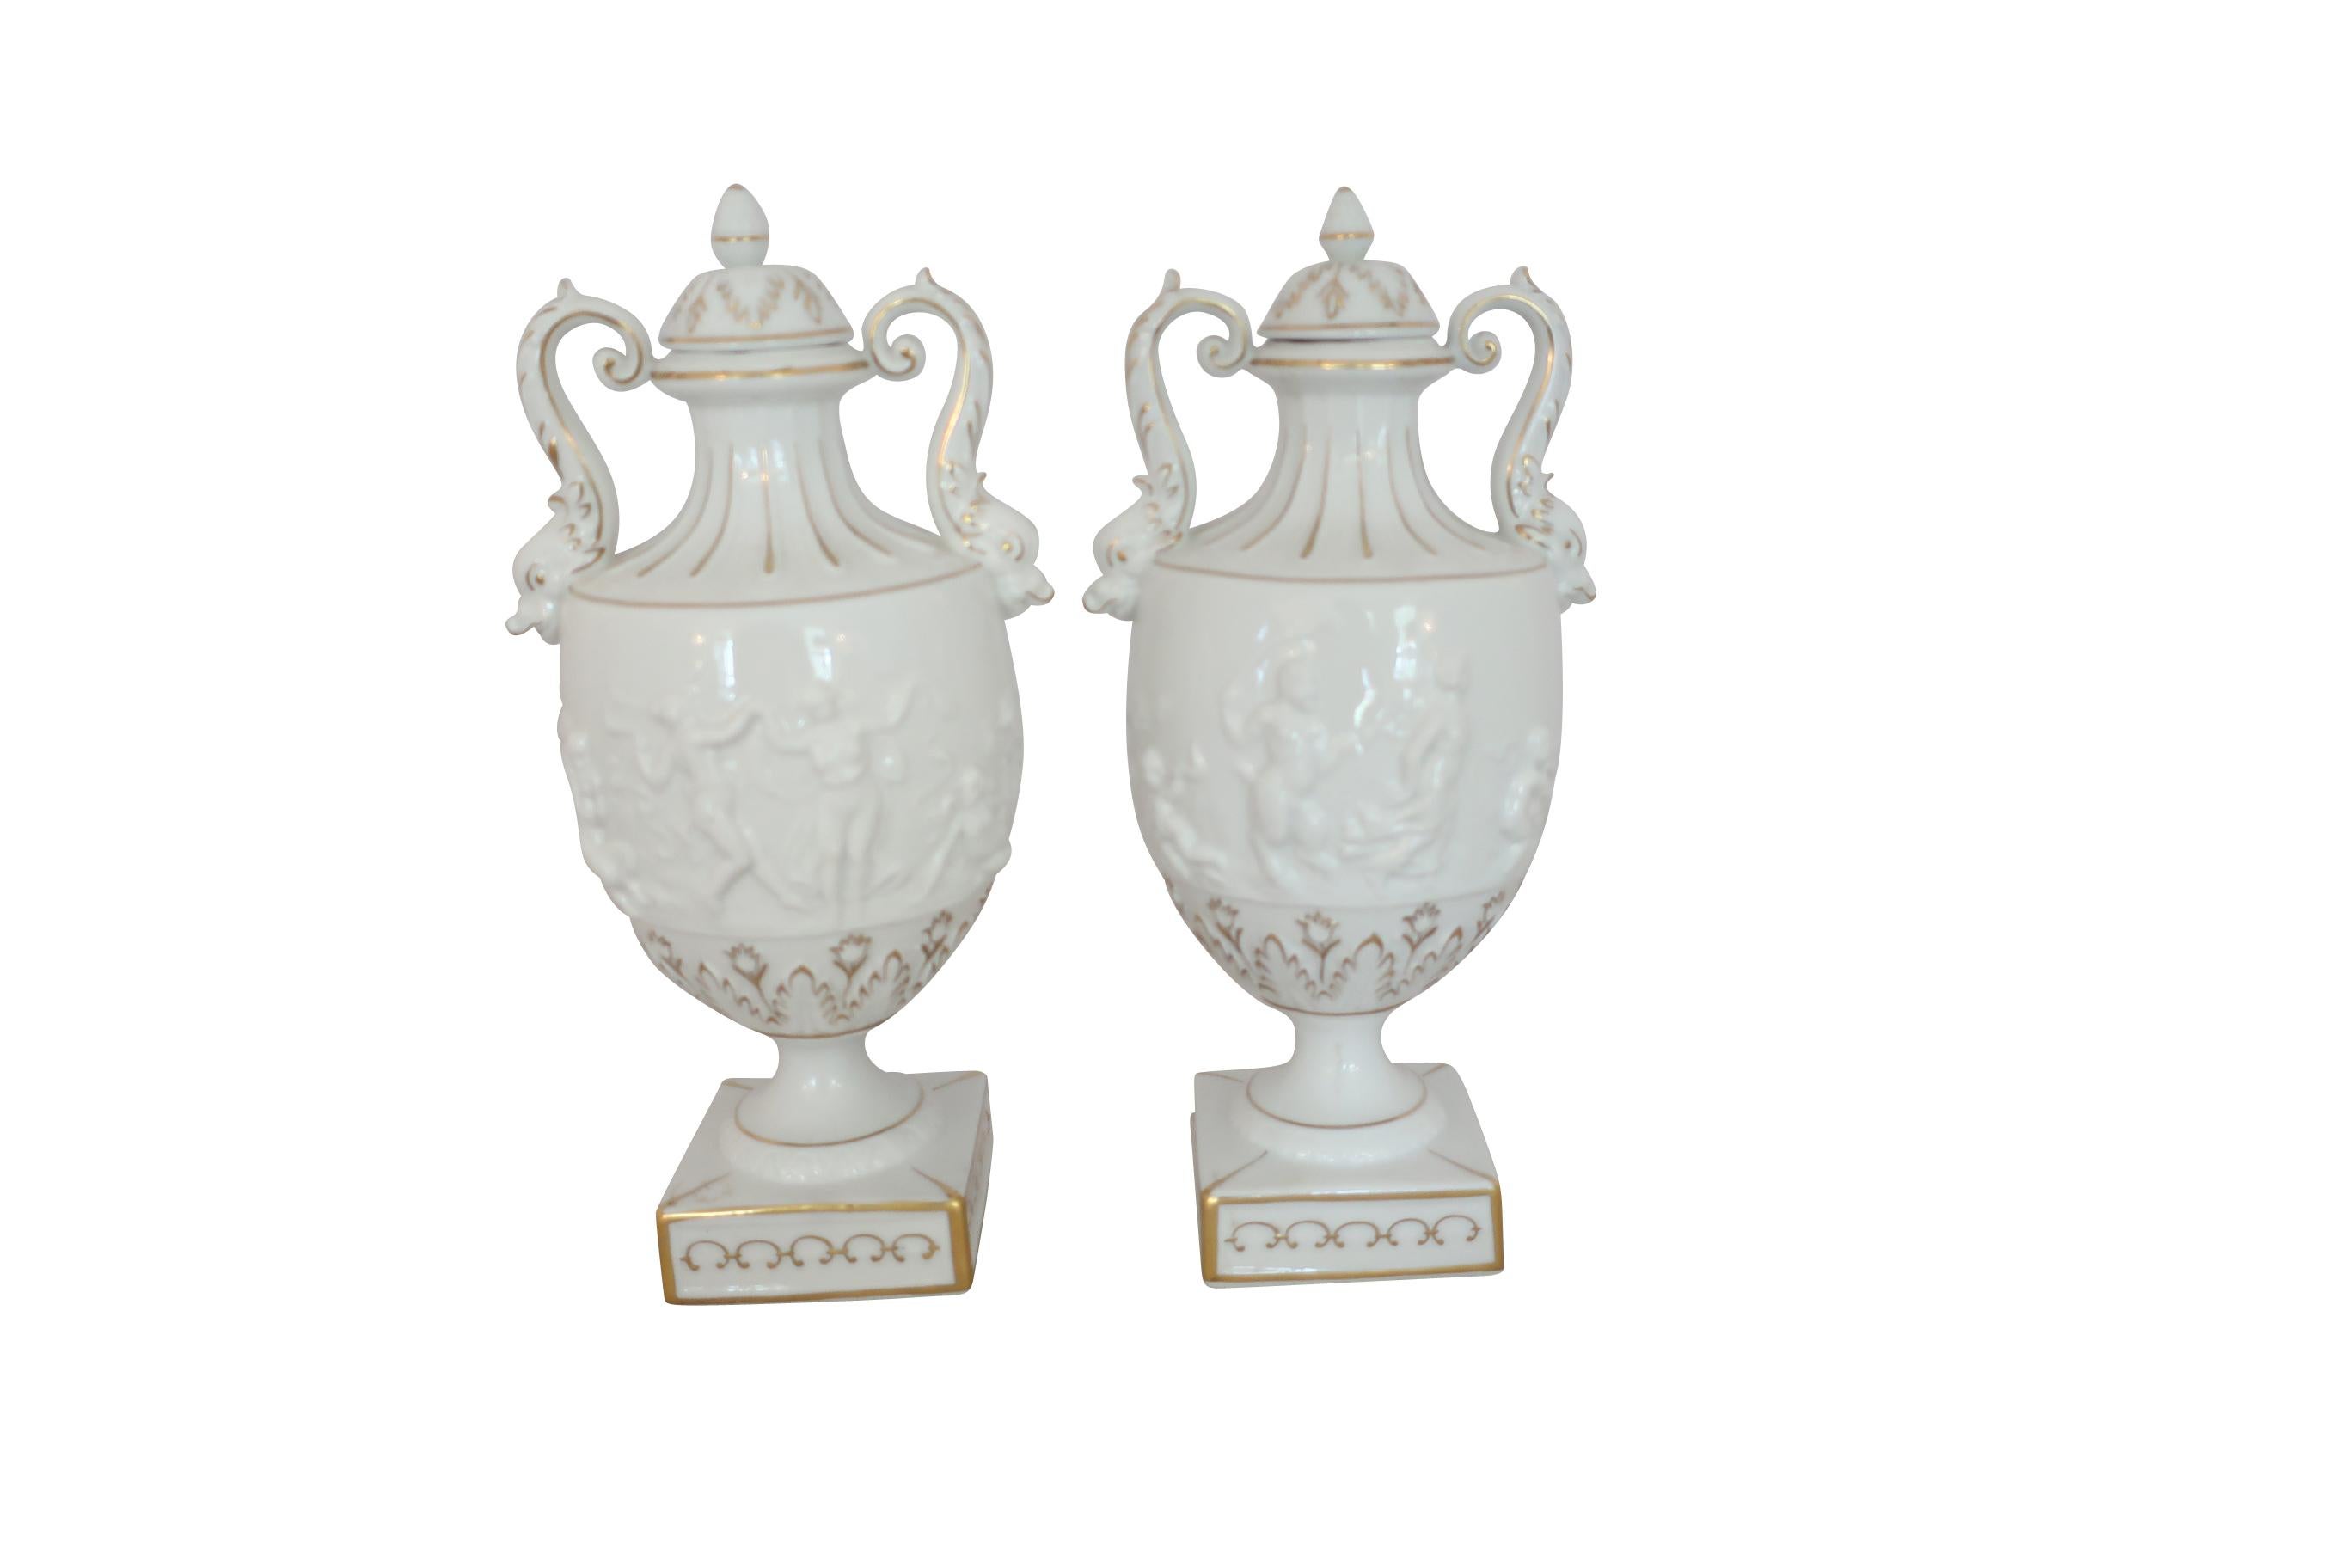 Paire d'urnes classiques de Capodimonte peintes à la main en blanc et en doré, avec couvercles sur une base carrée effilée. Les urnes sont dotées de poignées classiques à volutes et leur corps est décoré de motifs de putti en relief. De petites